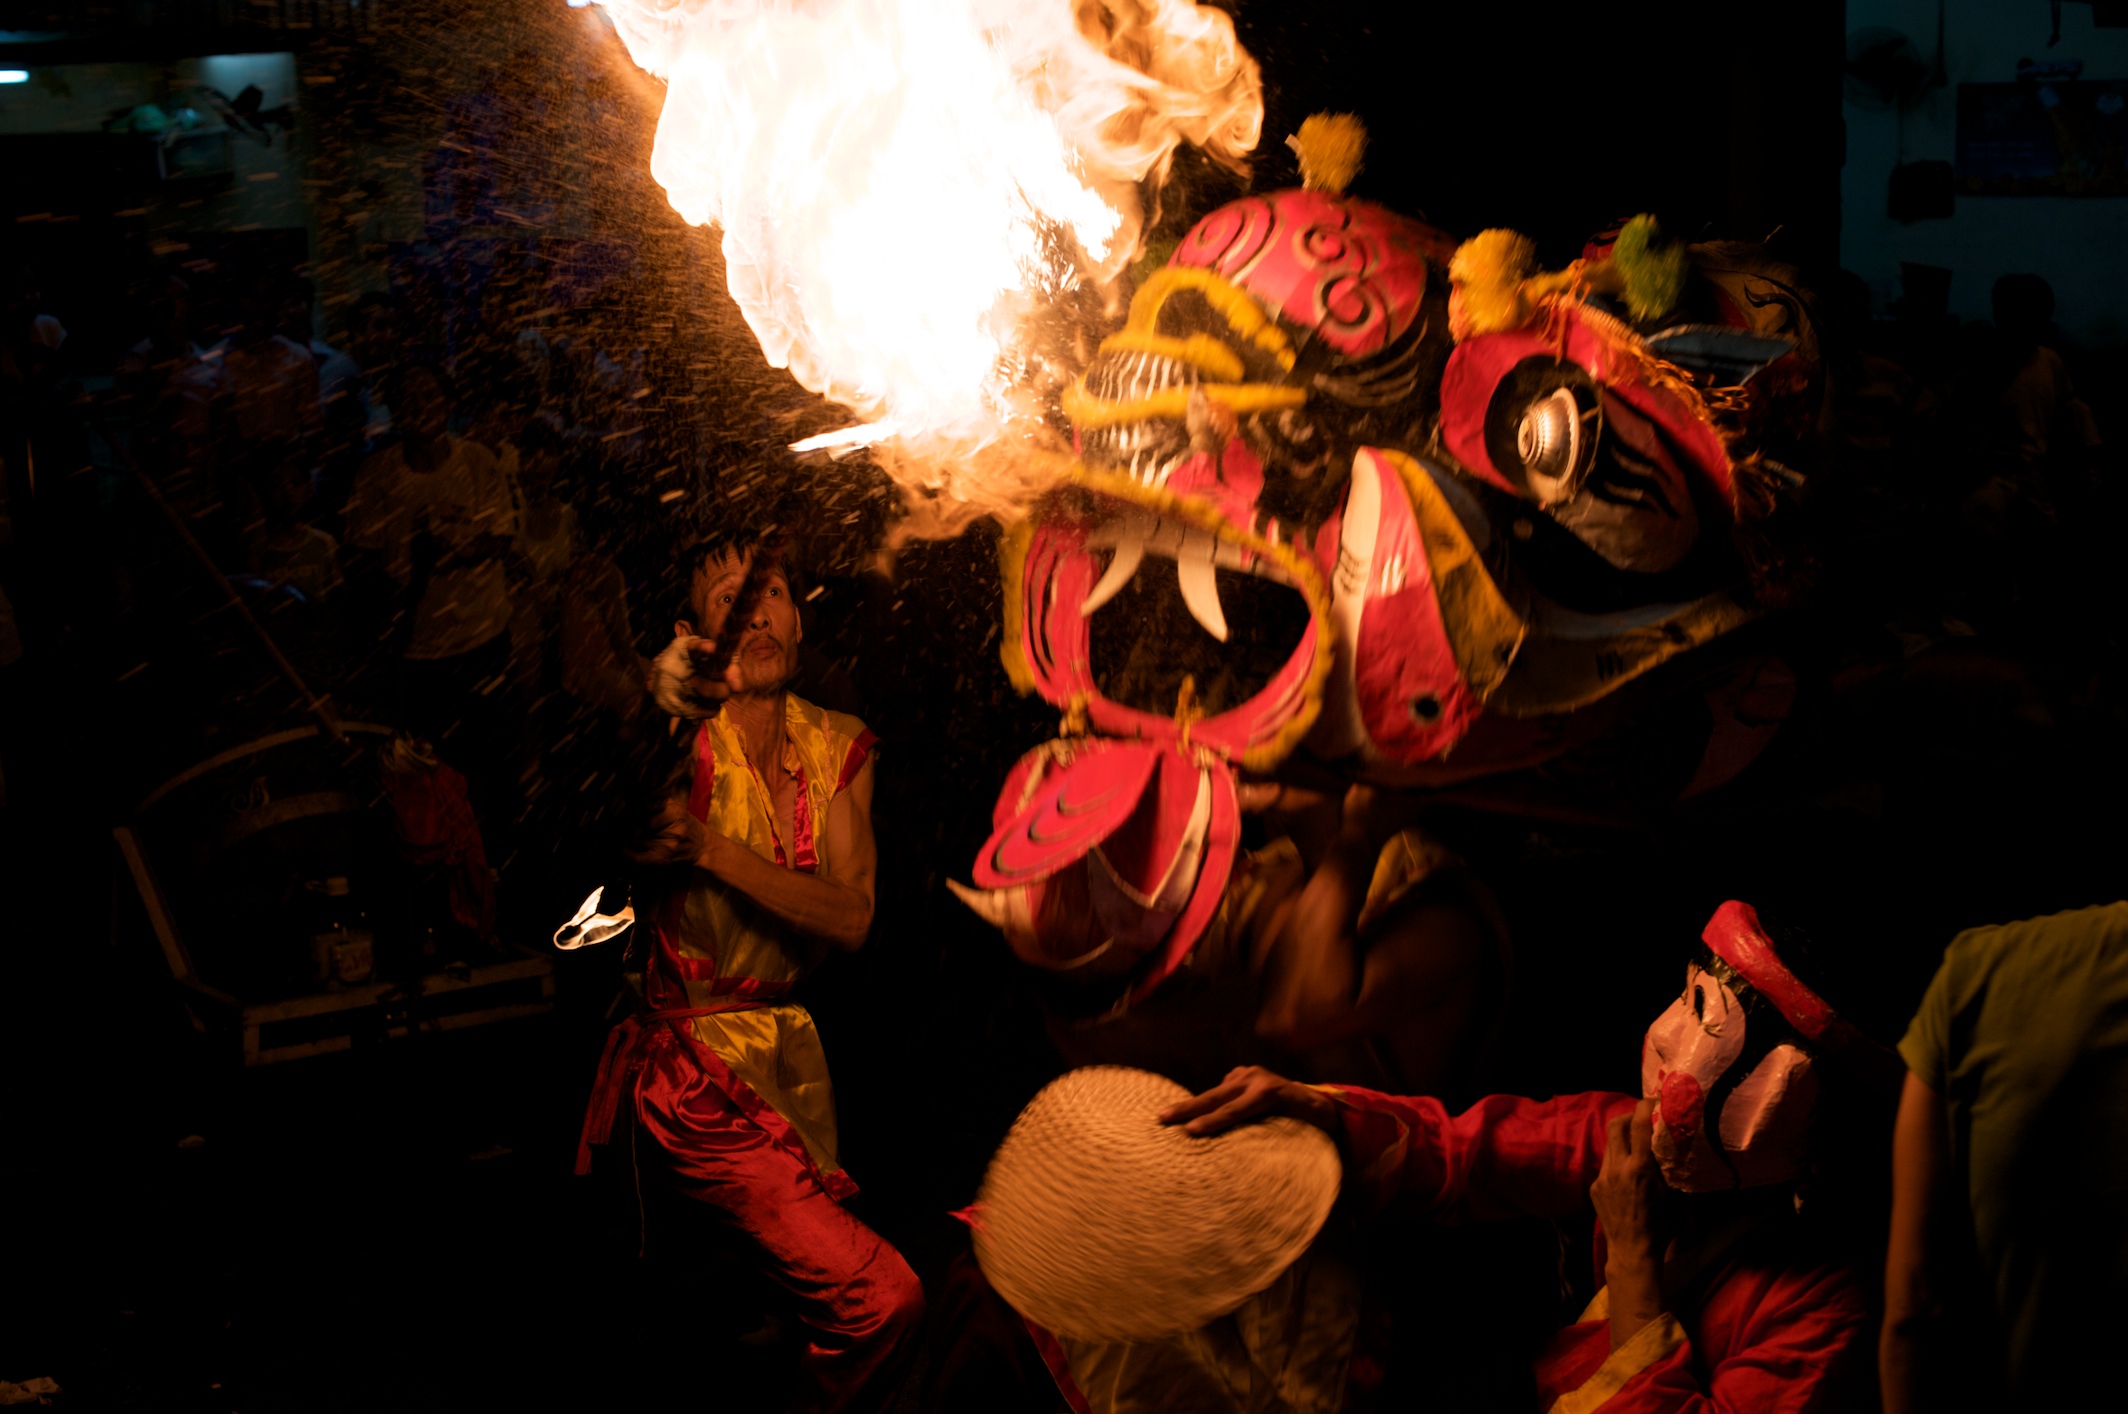 Tết Trung Thu - the dragon spitting fire!